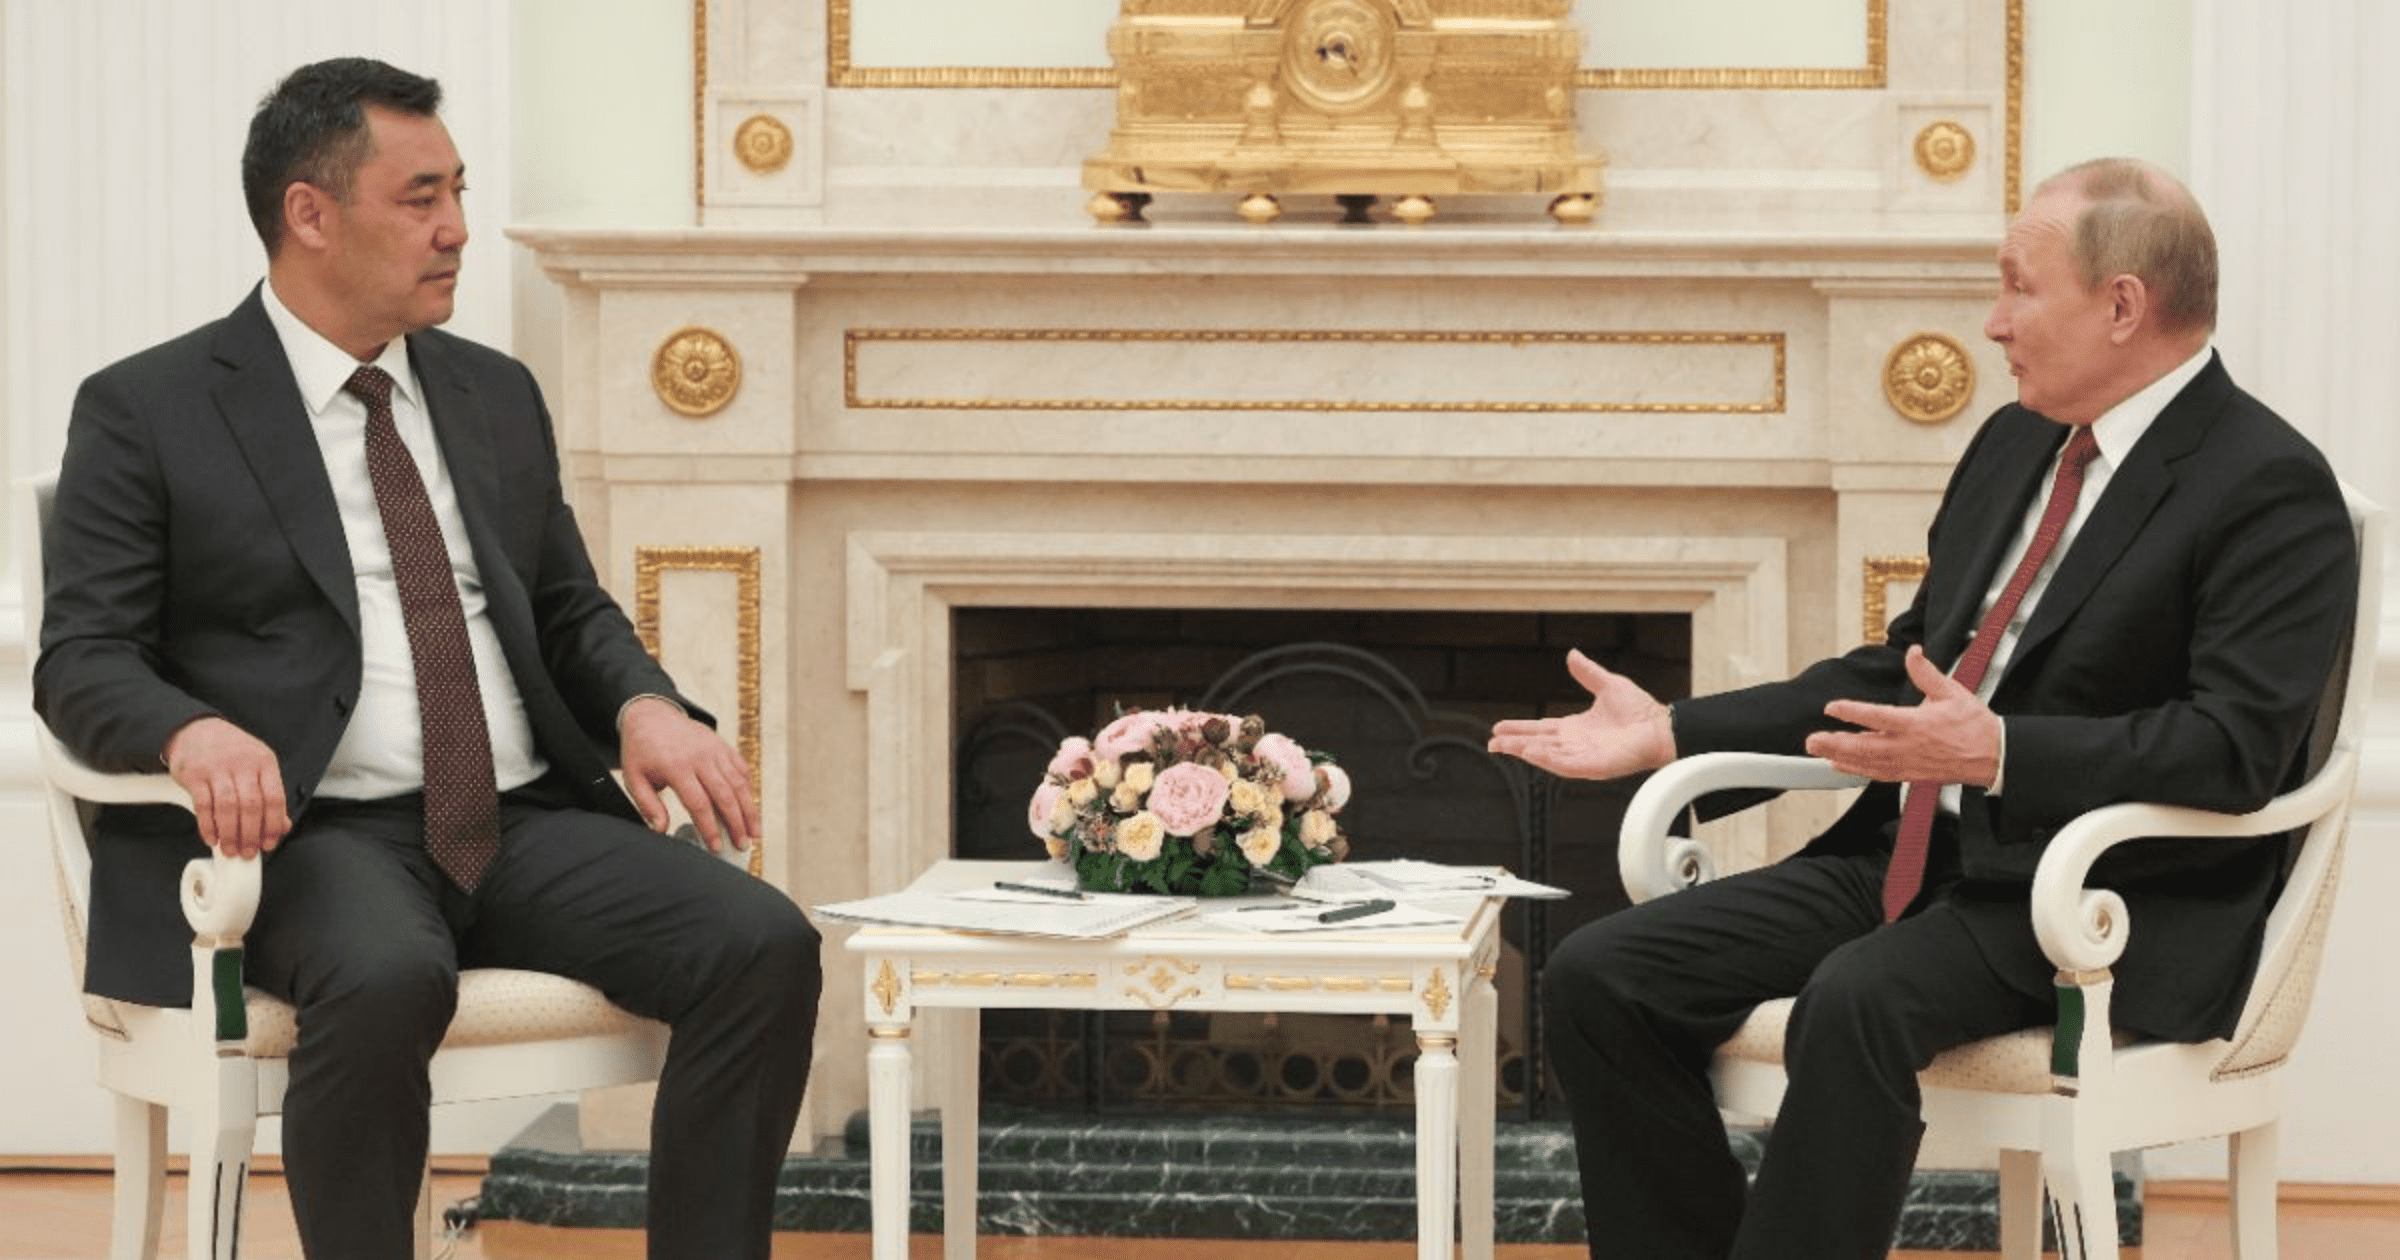 Жапаров встретился с Путиным и выразил готовность в сотрудничестве по всем направлениям